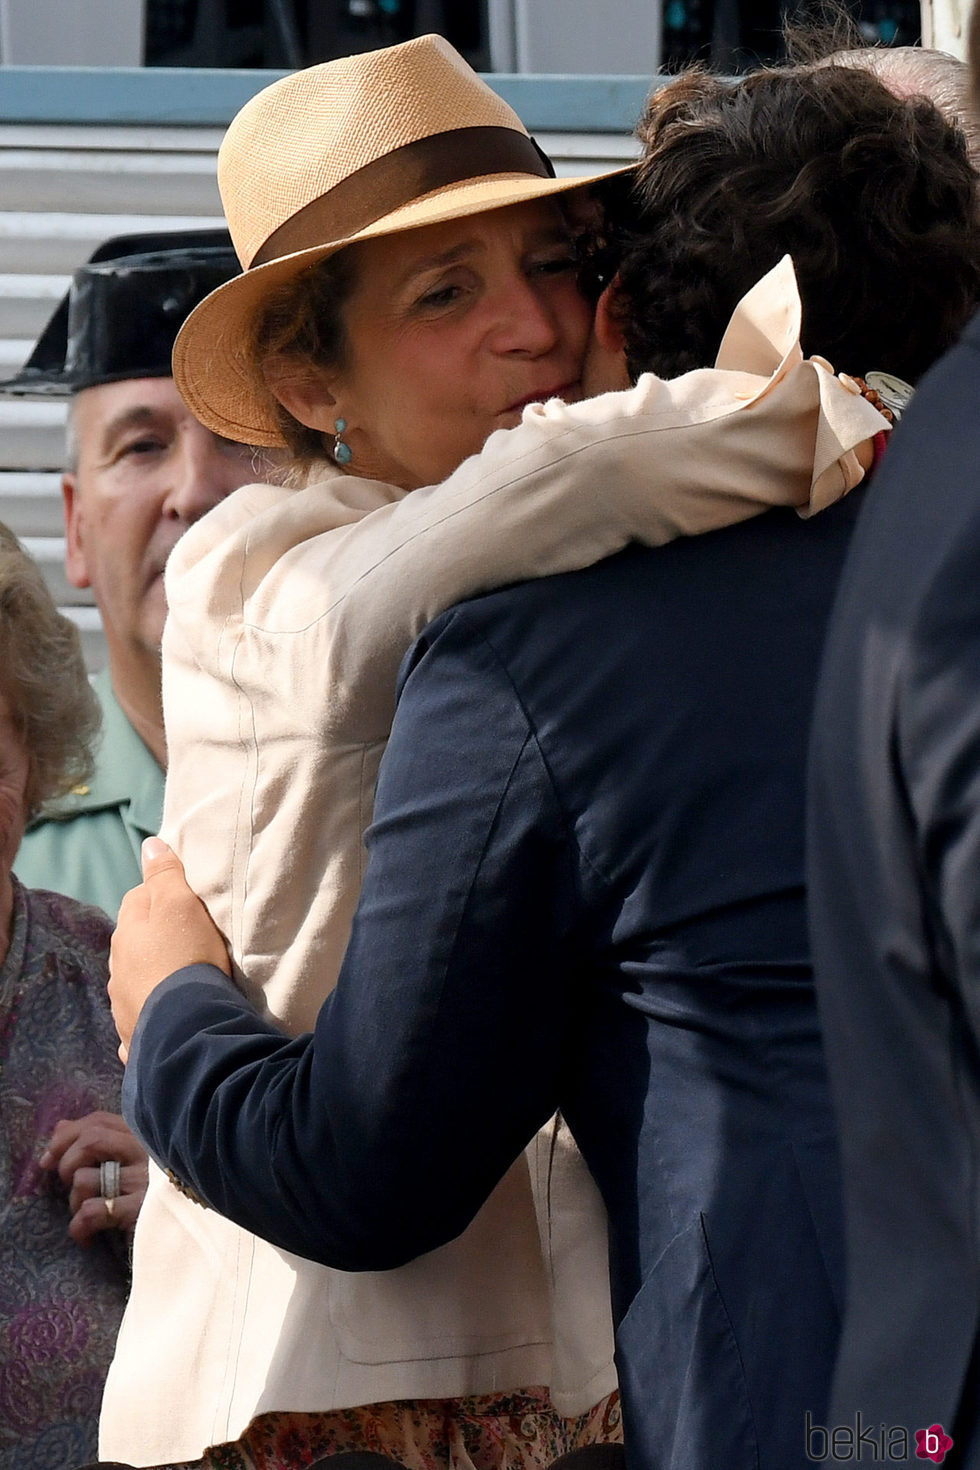 La Infanta Elena abraza a Froilán en la Final Copa de Oro del Torneo Internacional de Polo de Sotogrande